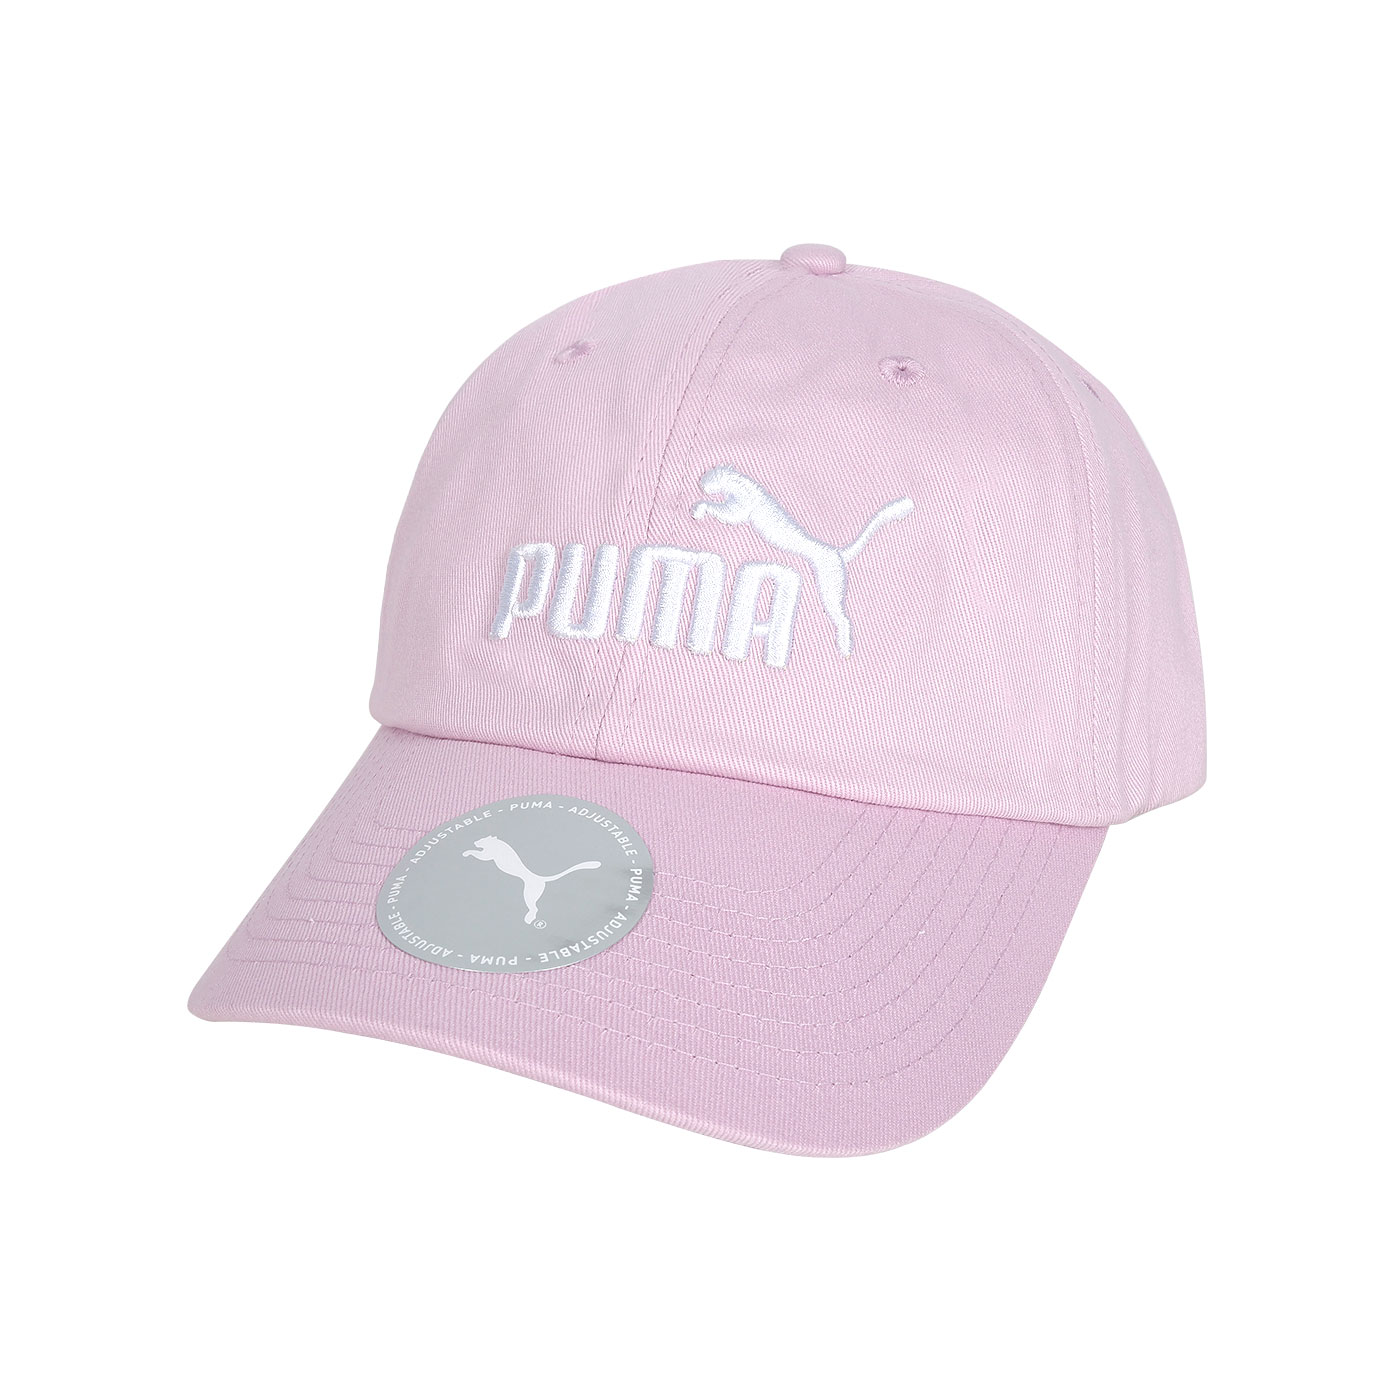 PUMA 基本系列 No.1 棒球帽  02435715 - 粉白